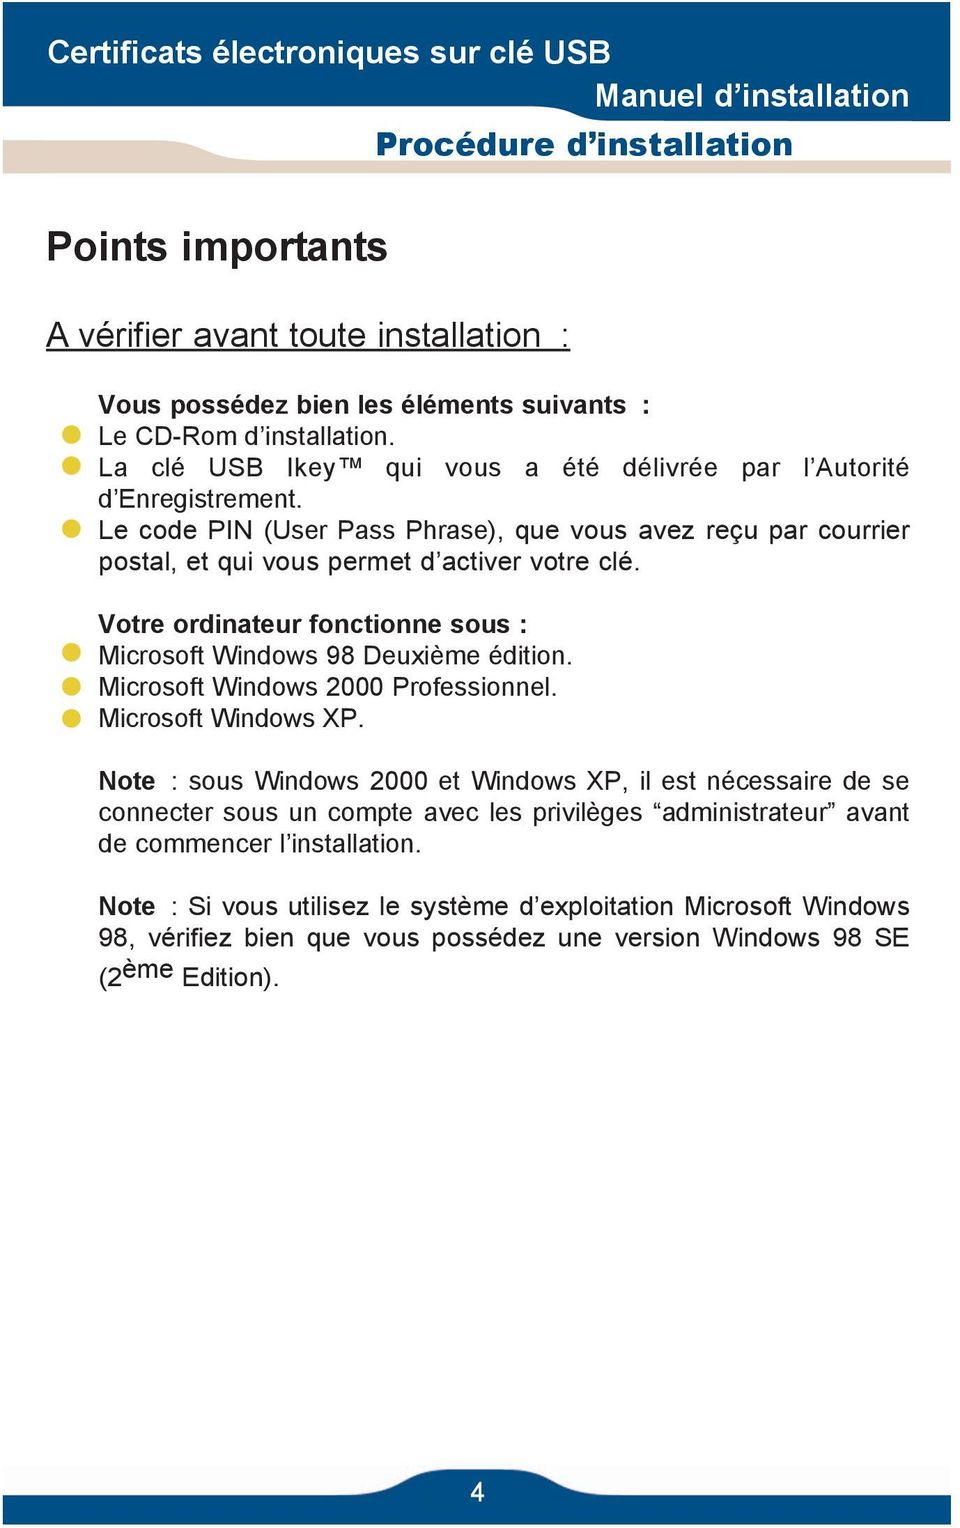 Votre ordinateur fonctionne sous : Microsoft Windows 98 Deuxième édition. Microsoft Windows 2000 Professionnel. Microsoft Windows XP.